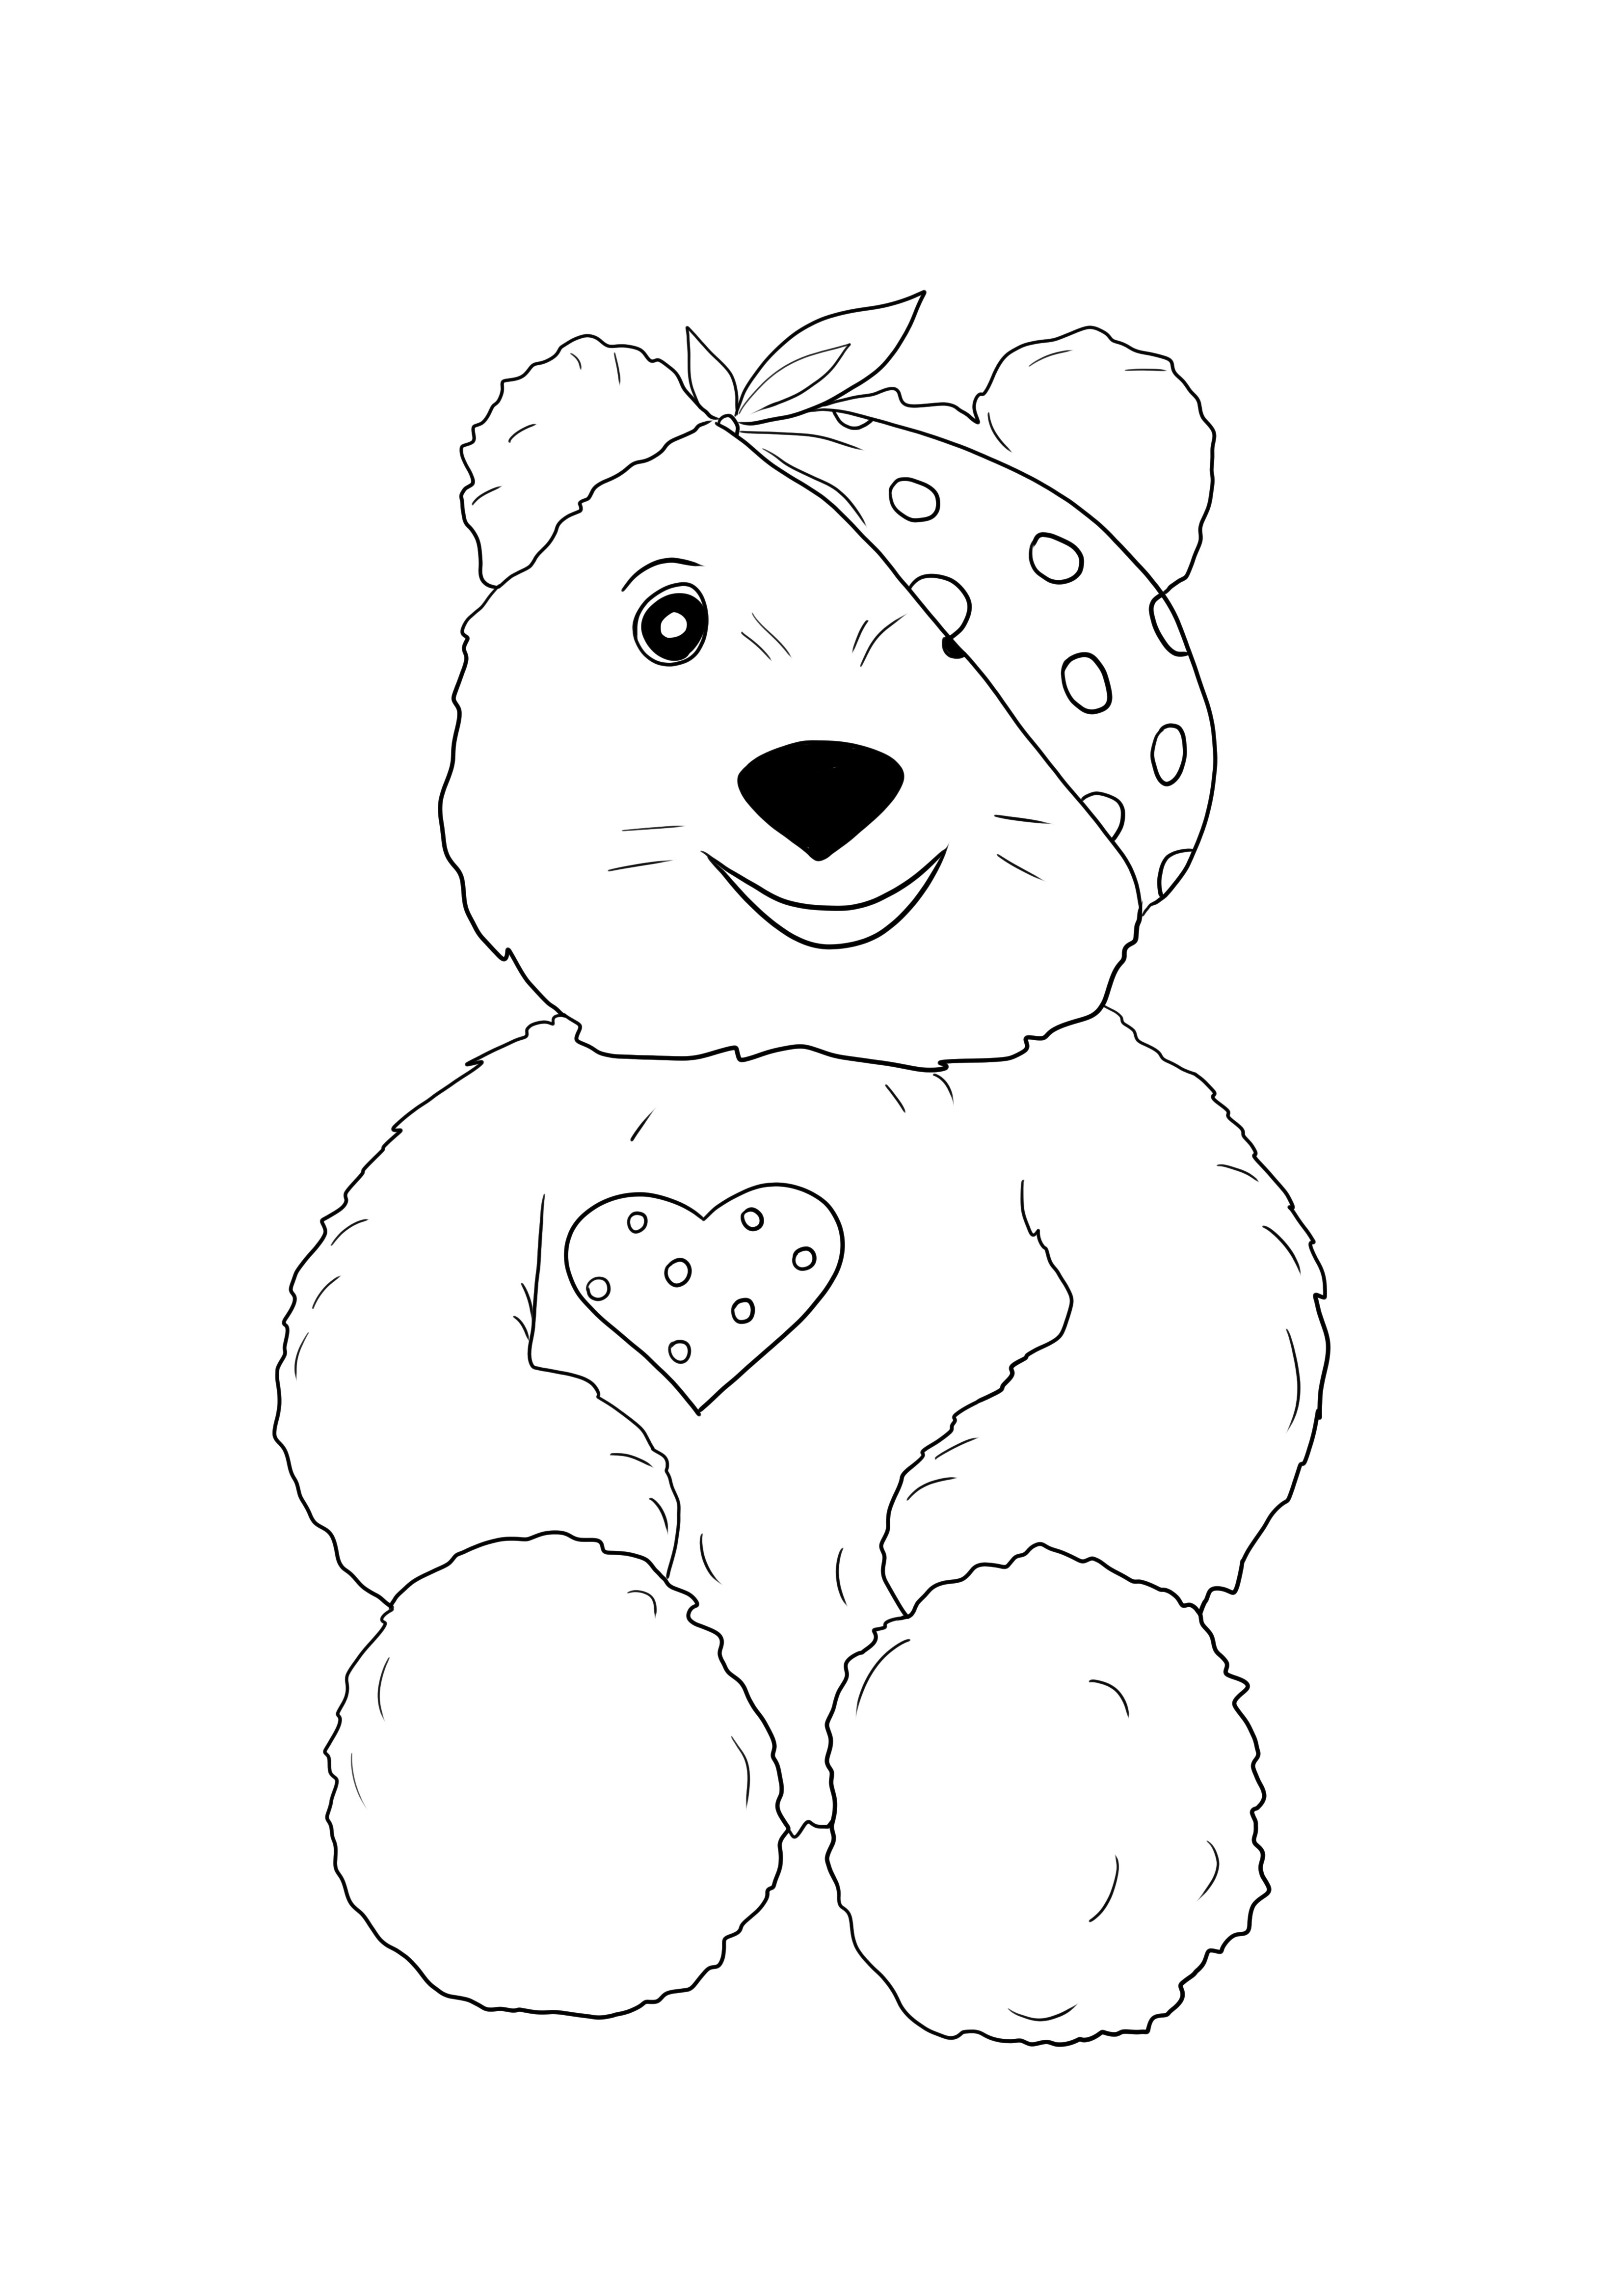 Pudsey bear dapat dicetak gratis untuk anak-anak dari segala usia